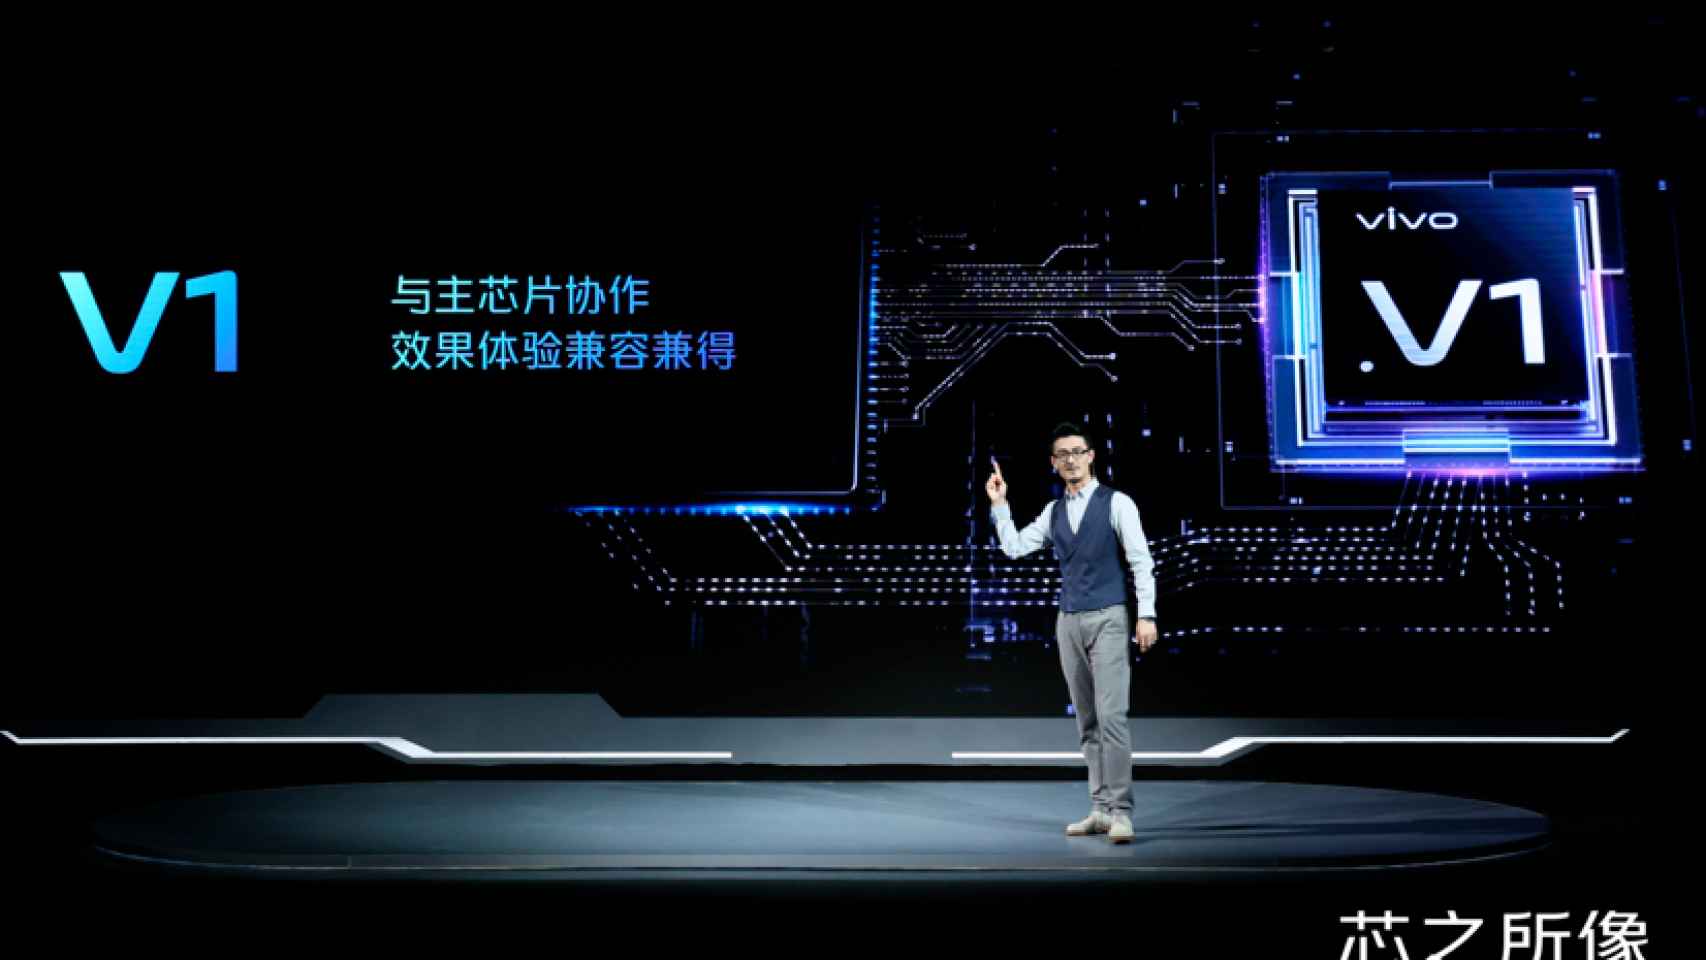 El Vivo V1 es el primer procesador de la marca de móviles chinos